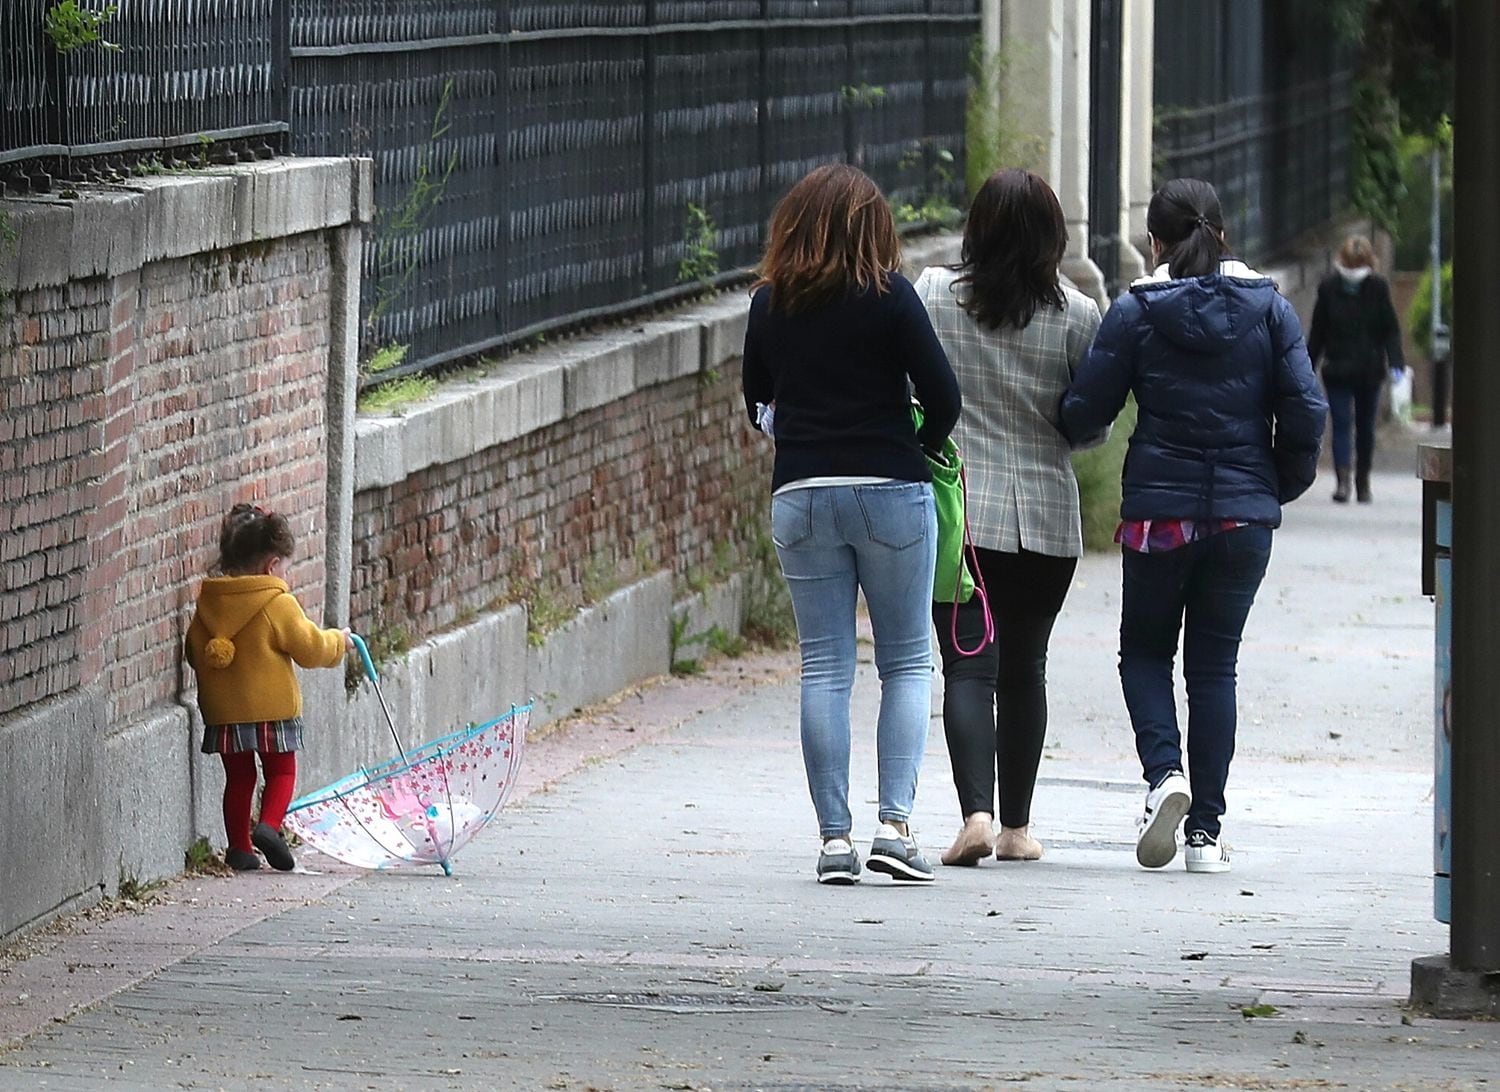 Una niña pasea junto a varios adultos, en el centro de Madrid durante la pandemia de coronavirus.